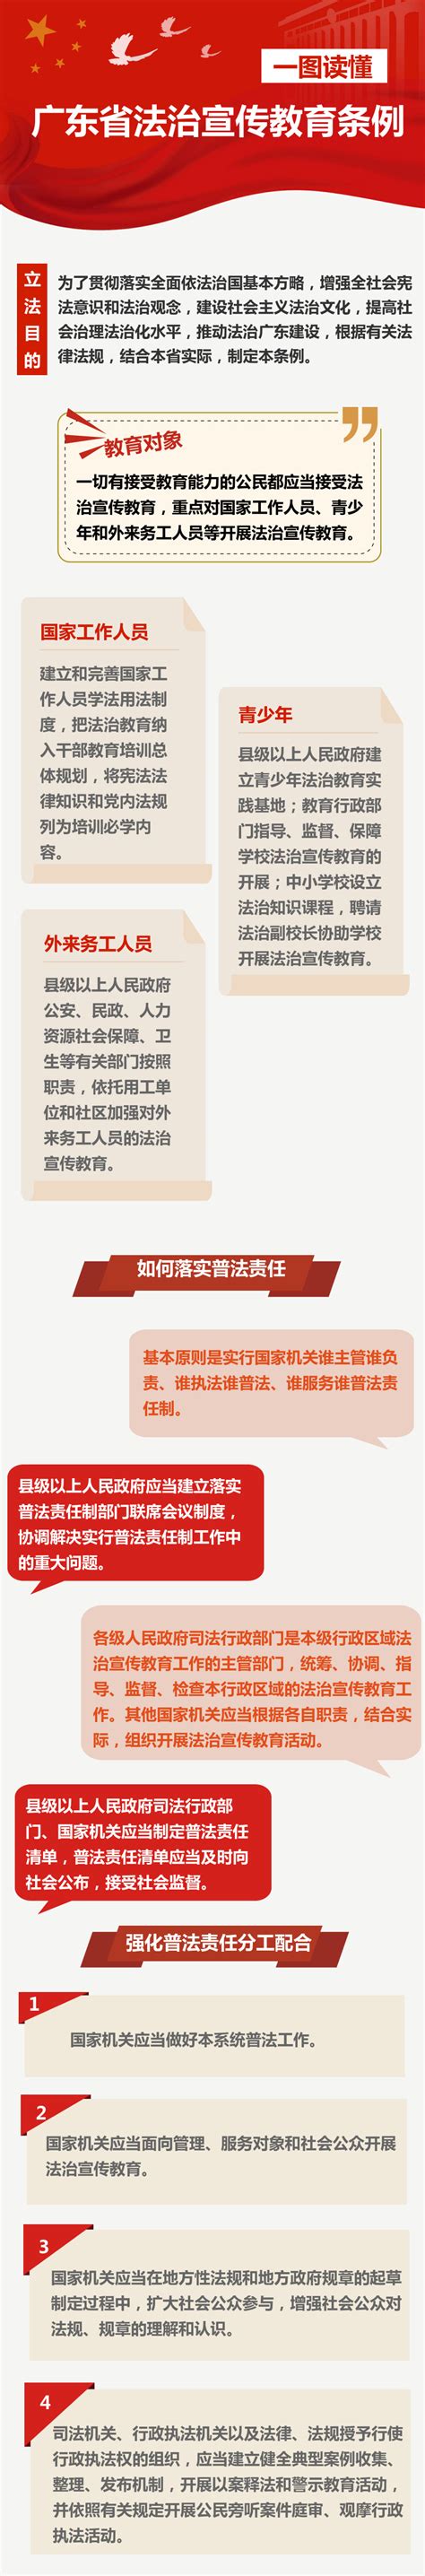 《浦江县开放型经济高质量发展扶持办法》政策图解